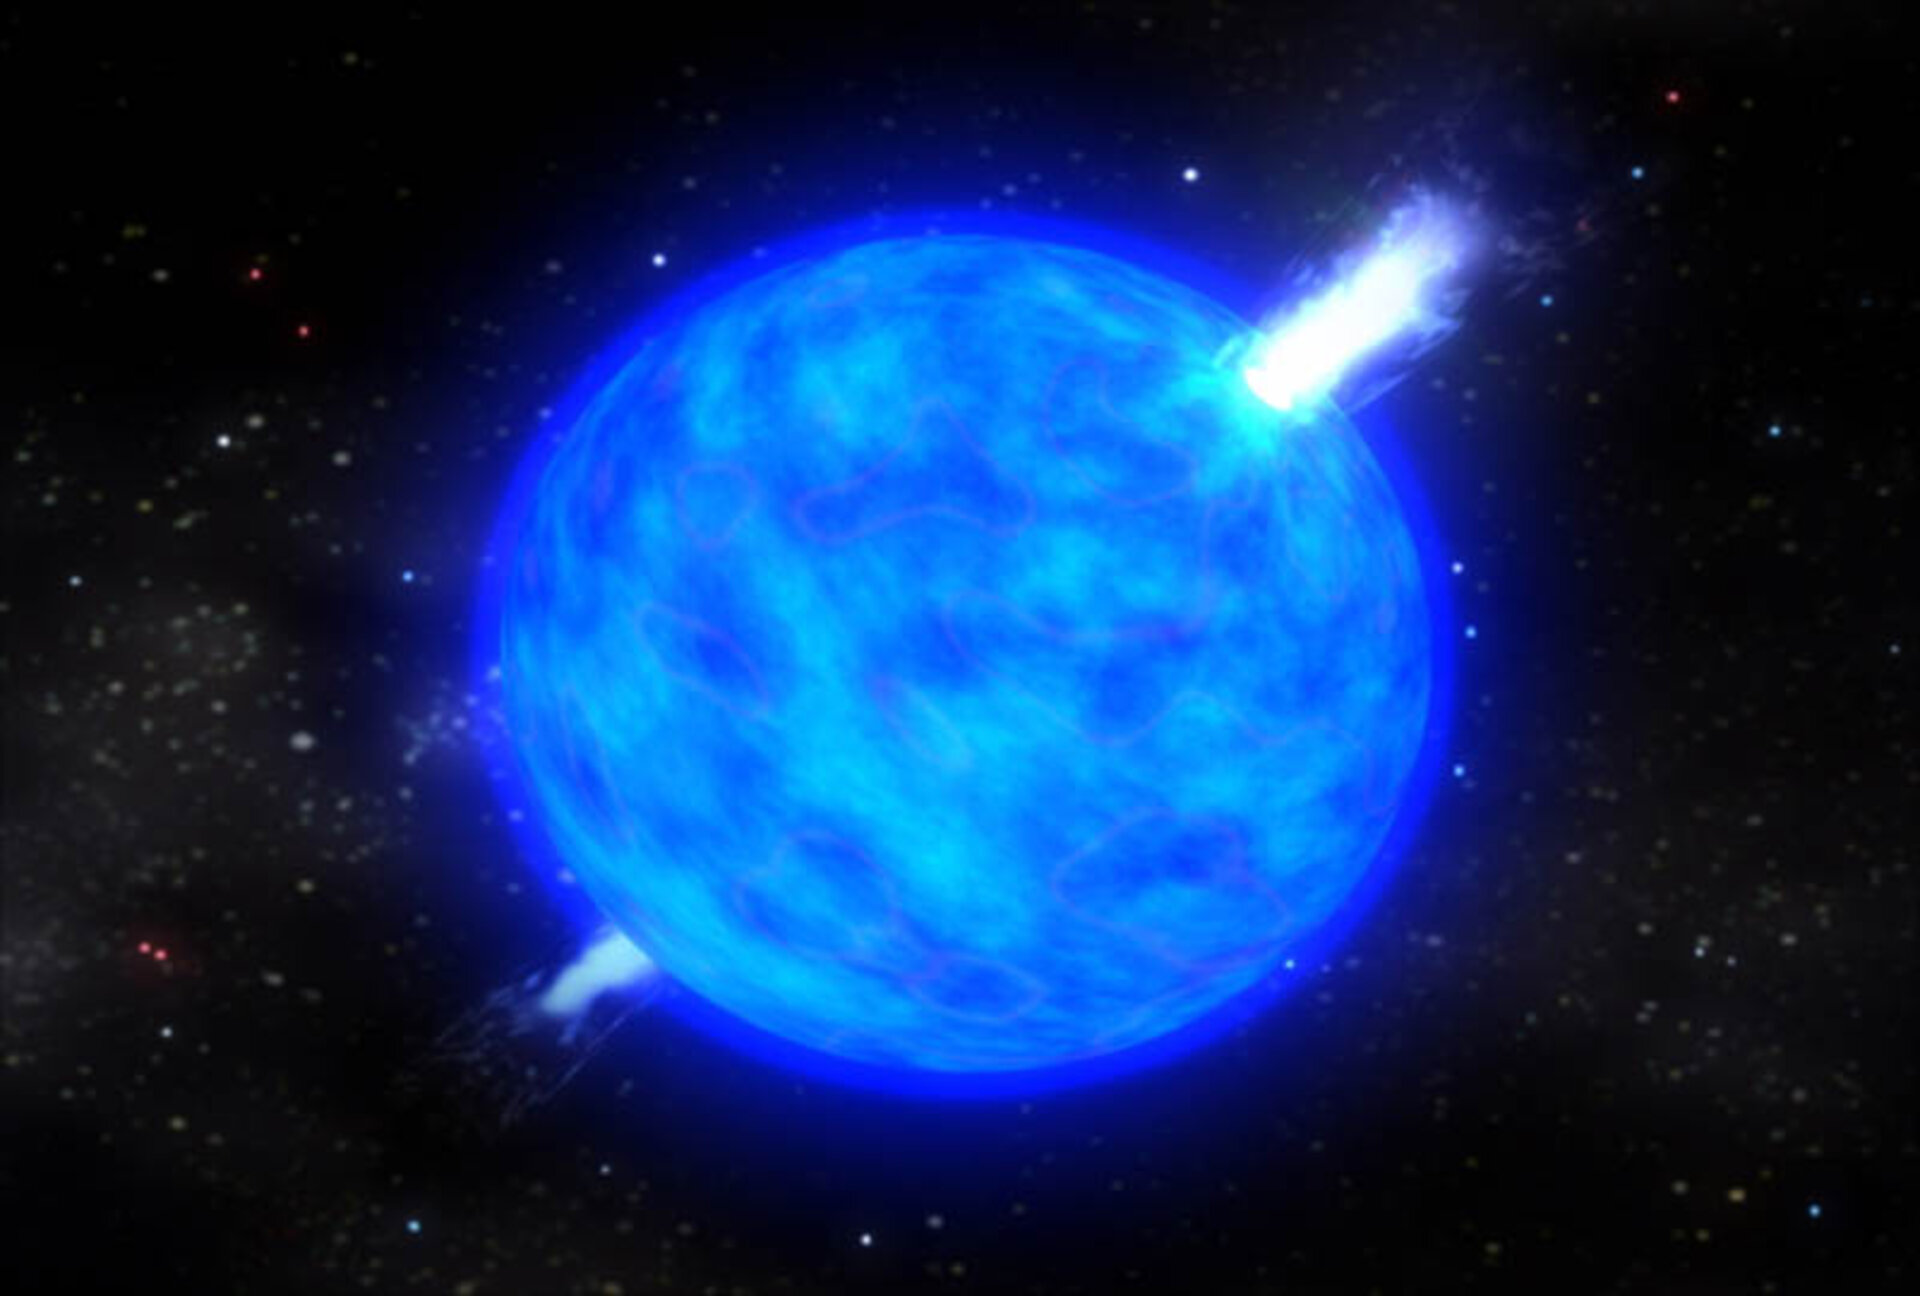 När en massiv stjärna nått slutet av sitt liv genomgår den en katastrofal kollaps som kan sända ut en våg av gammastrålning